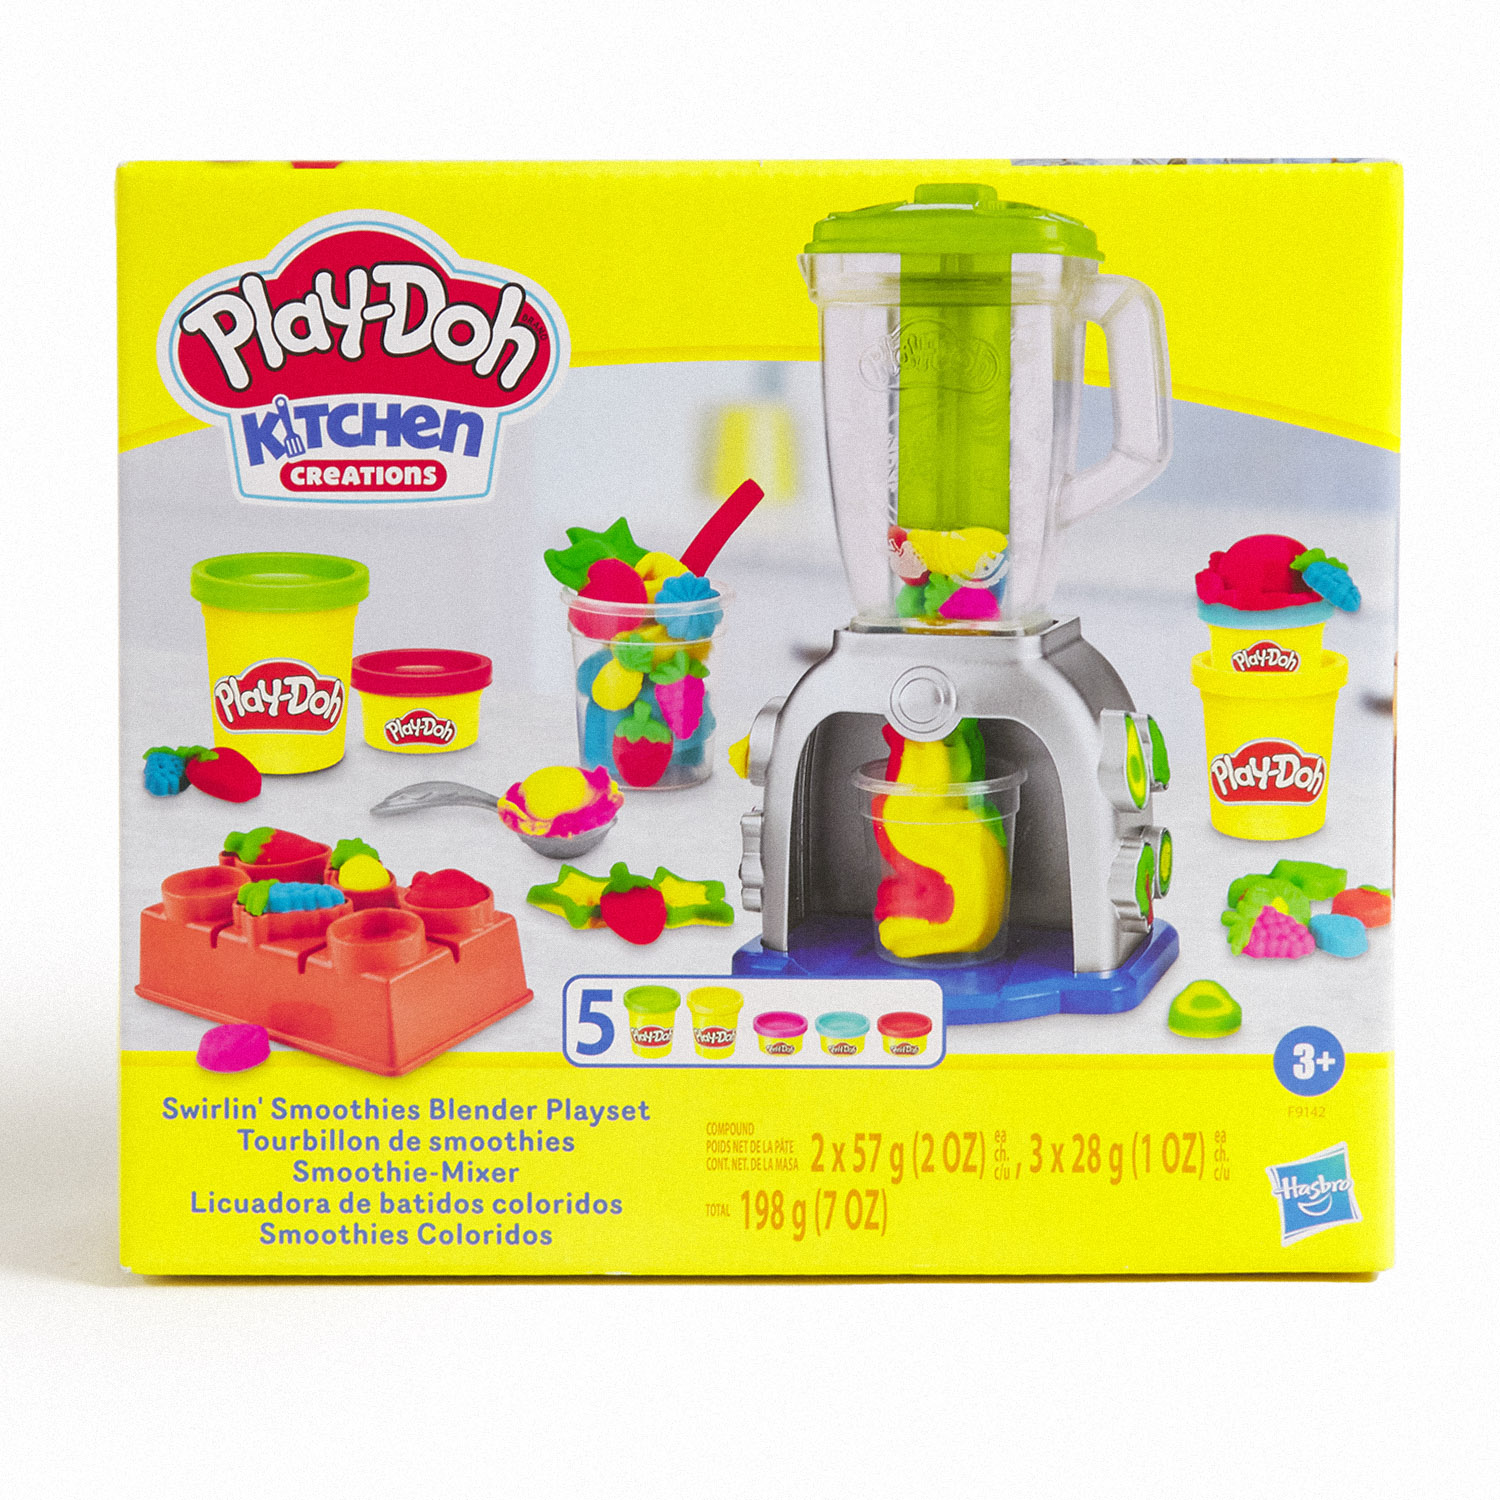 Play-doh Licuadora de Batidos Coloridos